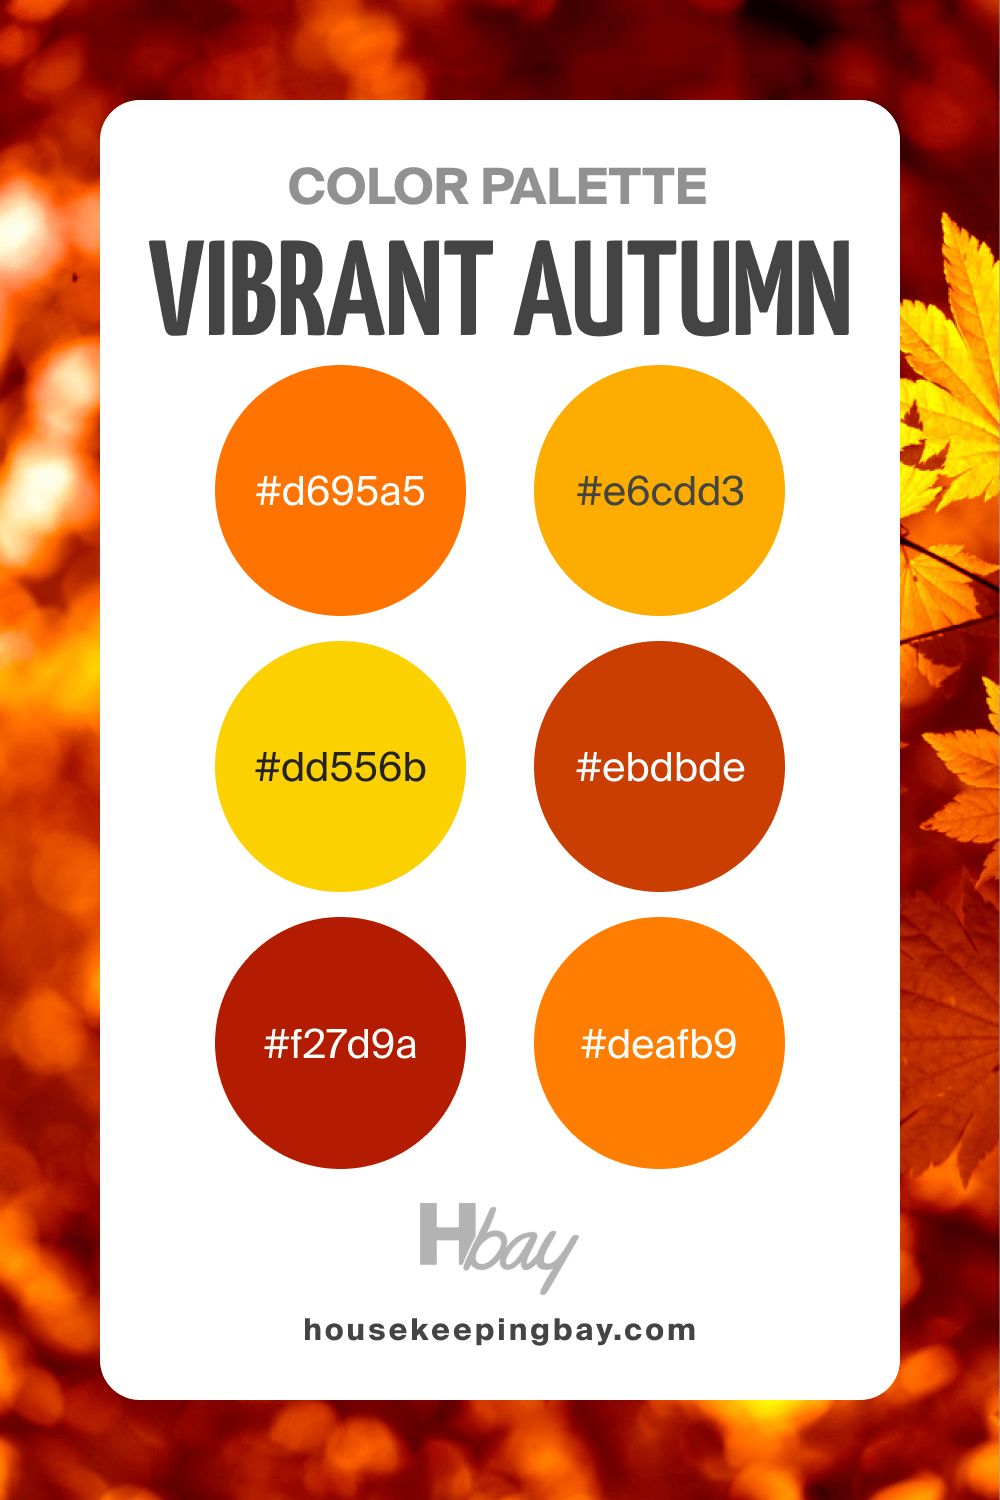 Vibrant autumn color palette